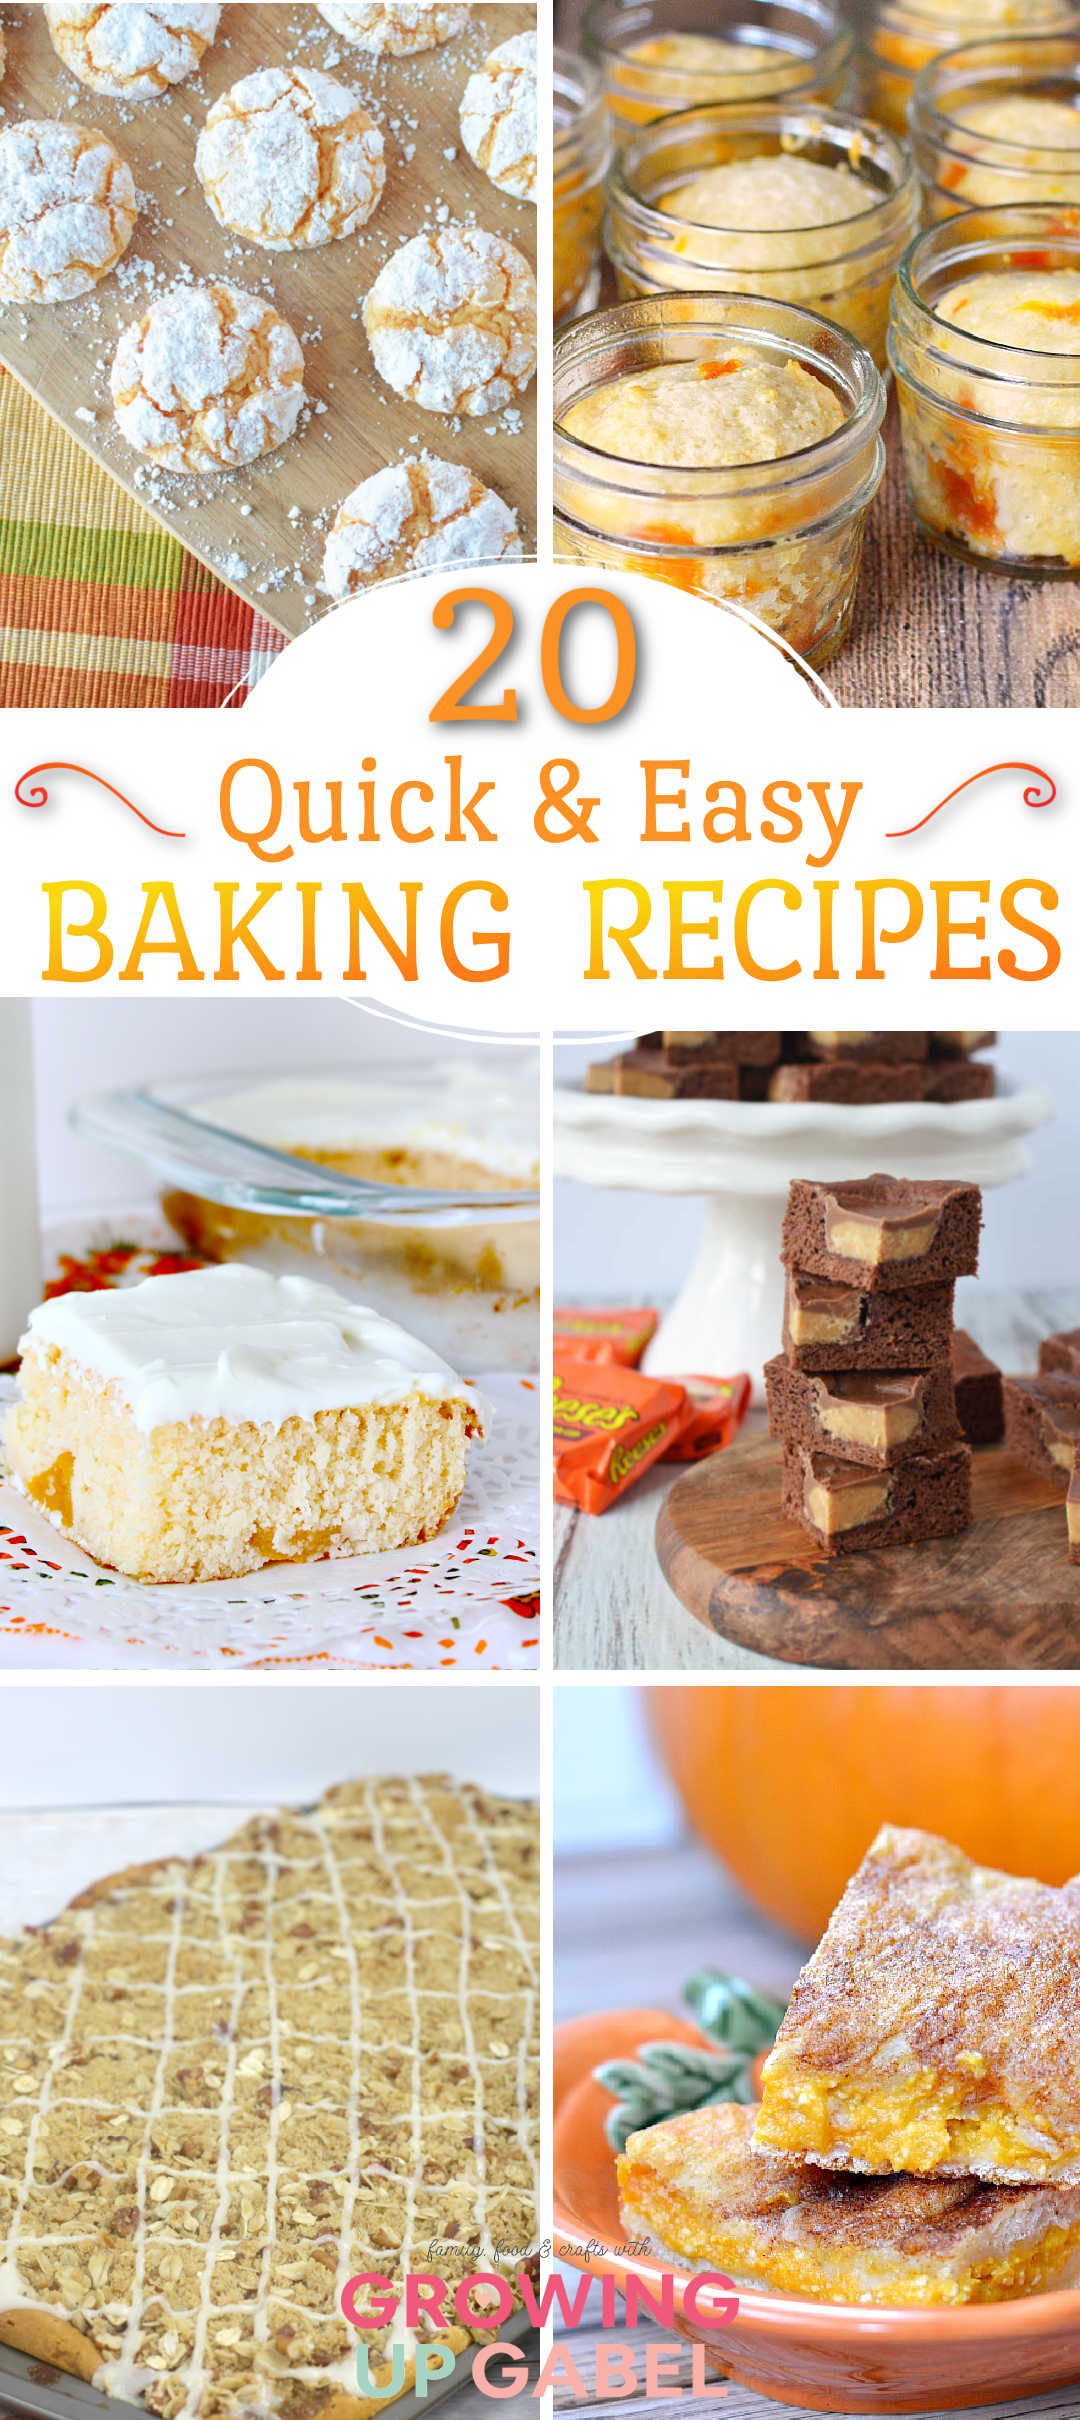 Quick Baking Recipes